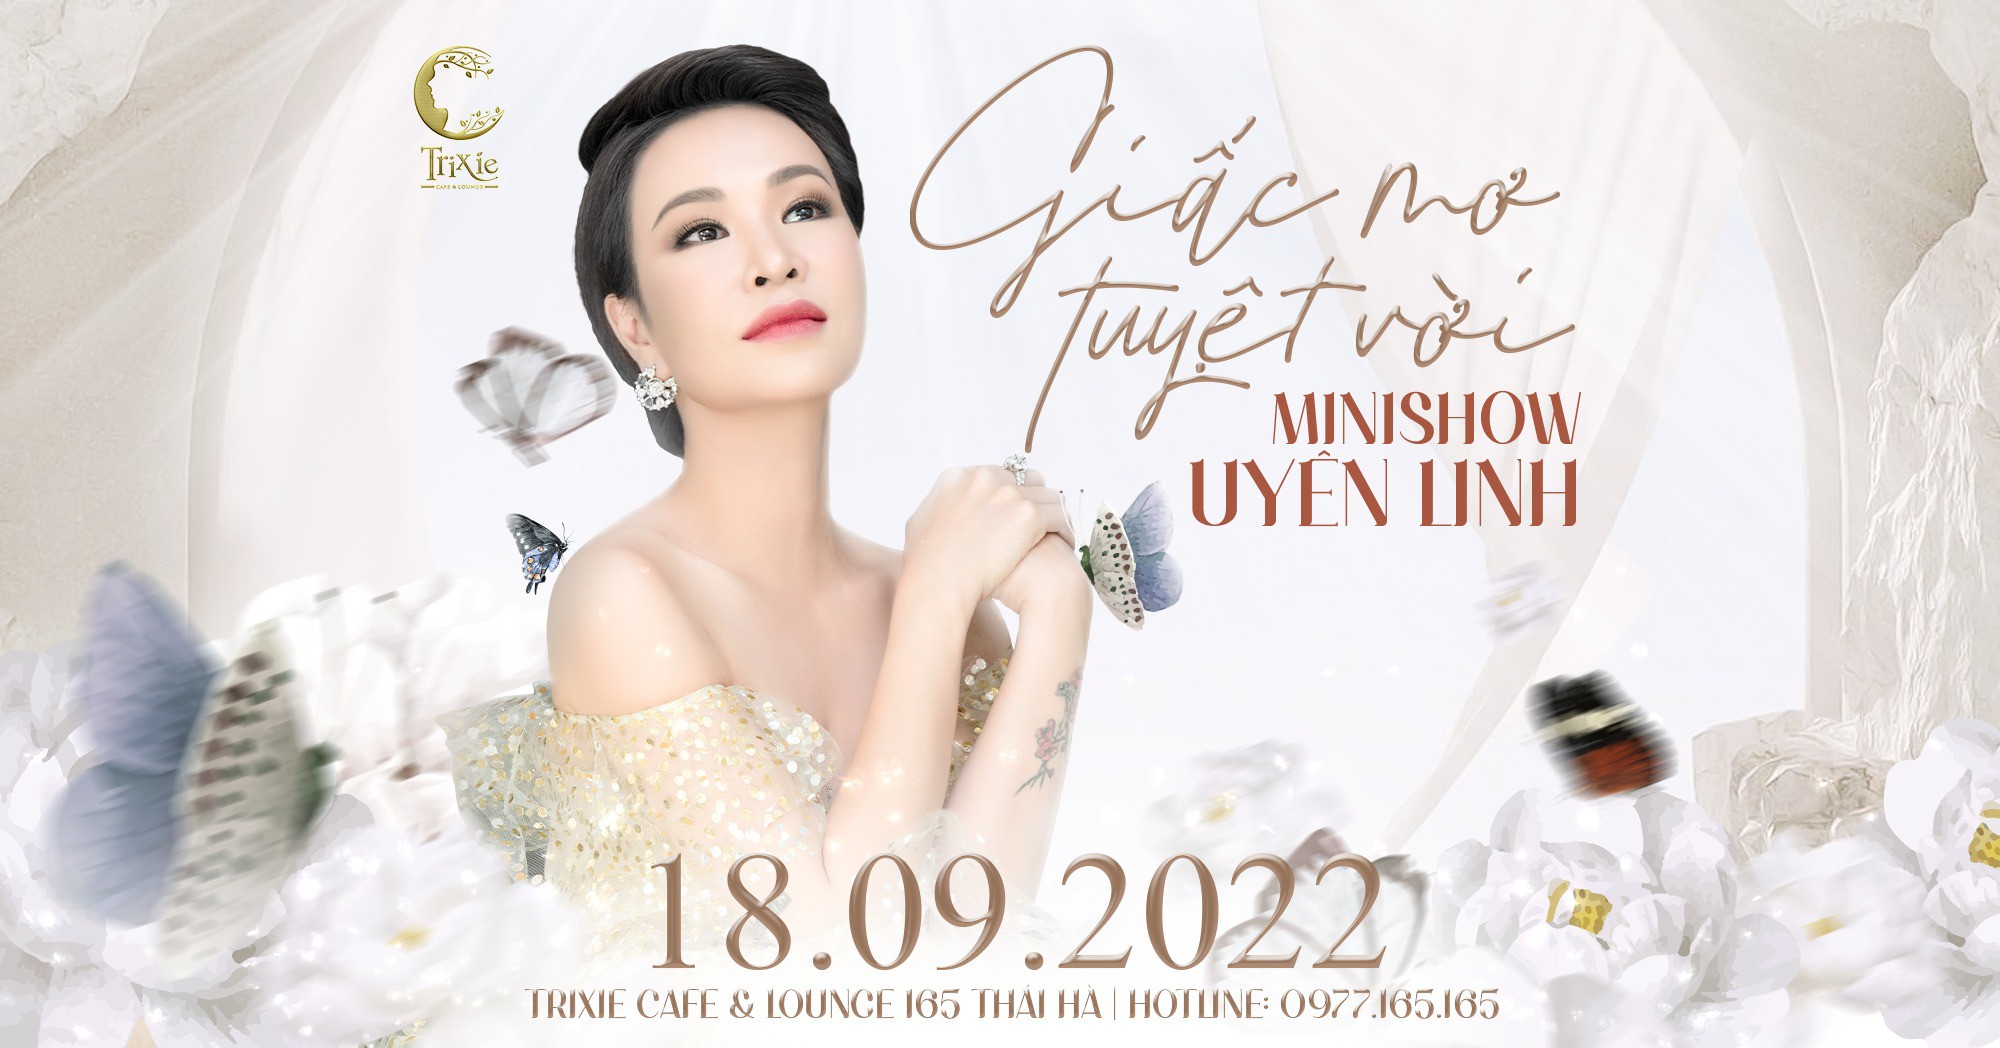 Minishow Uyên Linh - Giấc Mơ Tuyệt Vời - Ngày 18.09.2022